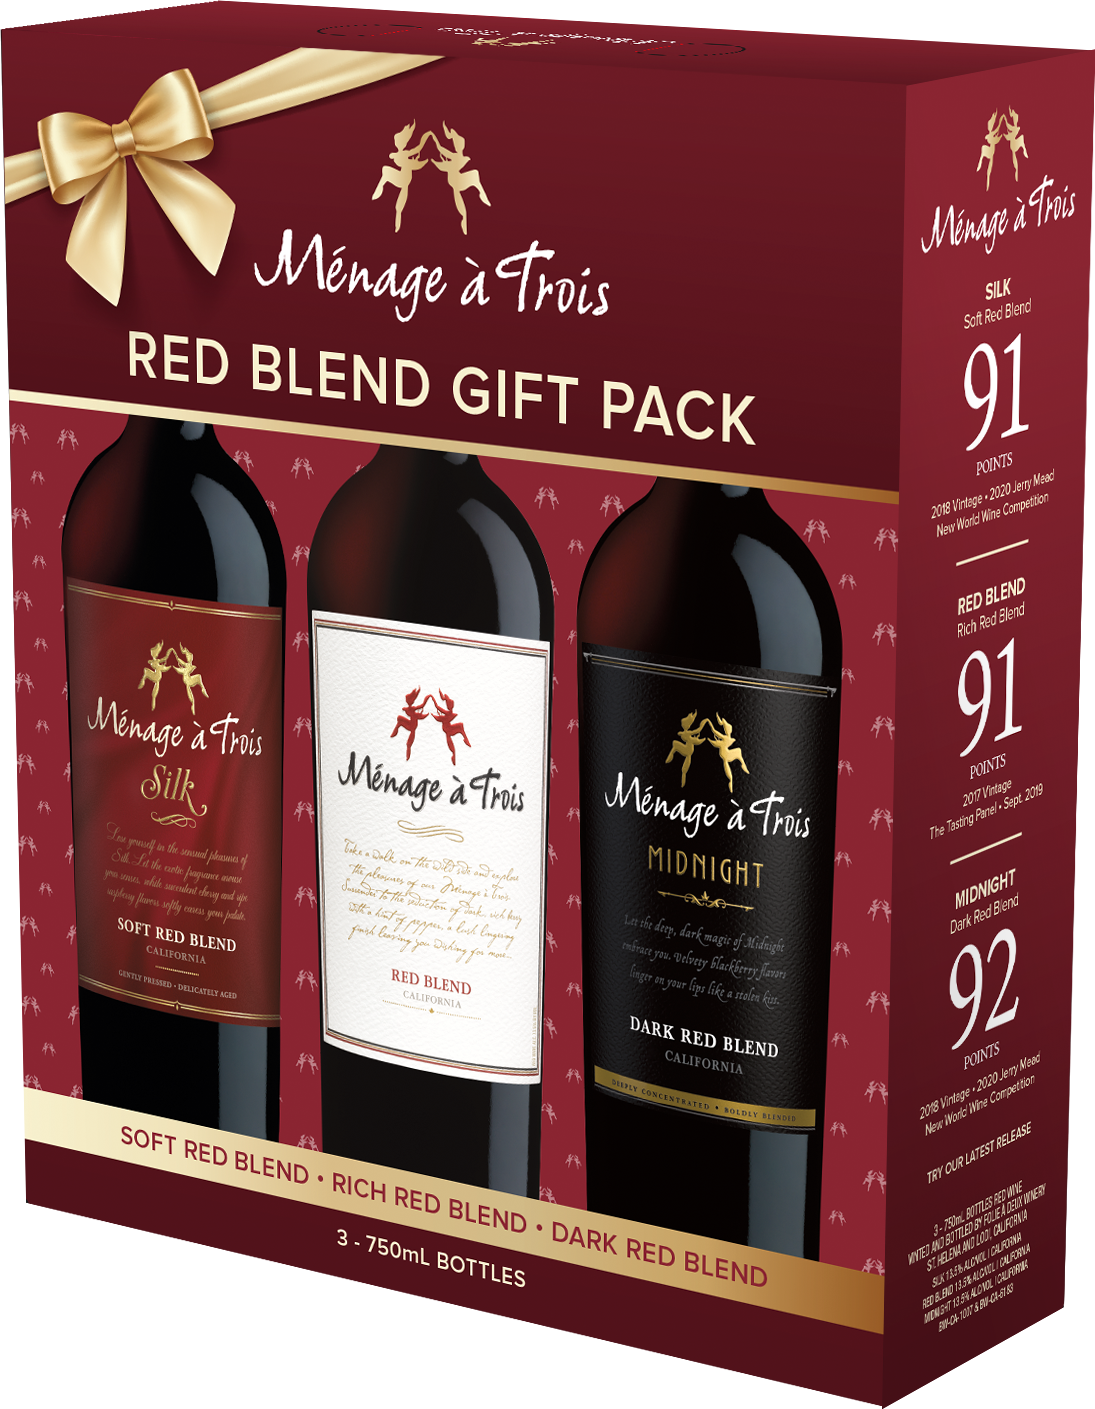 https://www.bottlebuys.com/images/sites/bottlebuys/labels/menage-a-trois-3-bottle-gift-set_1.jpg